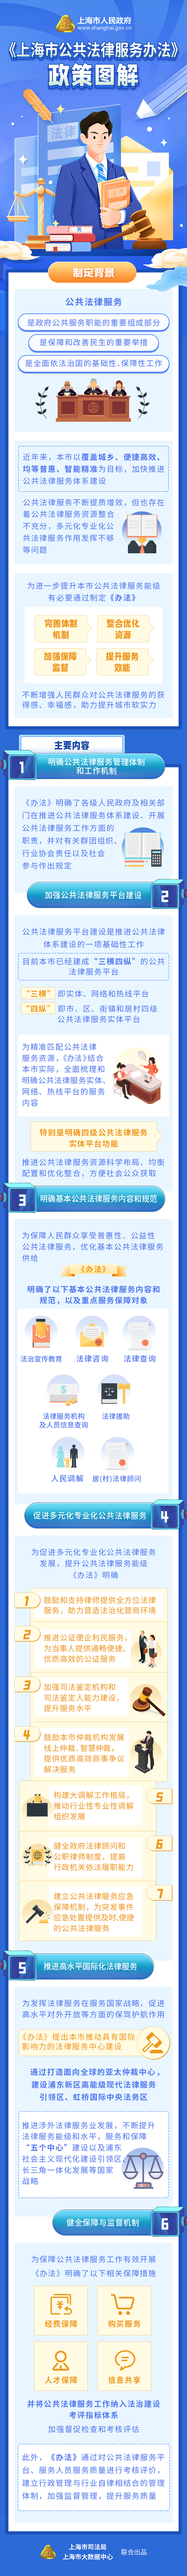 《上海市公共法律服务办法》政策图解.png